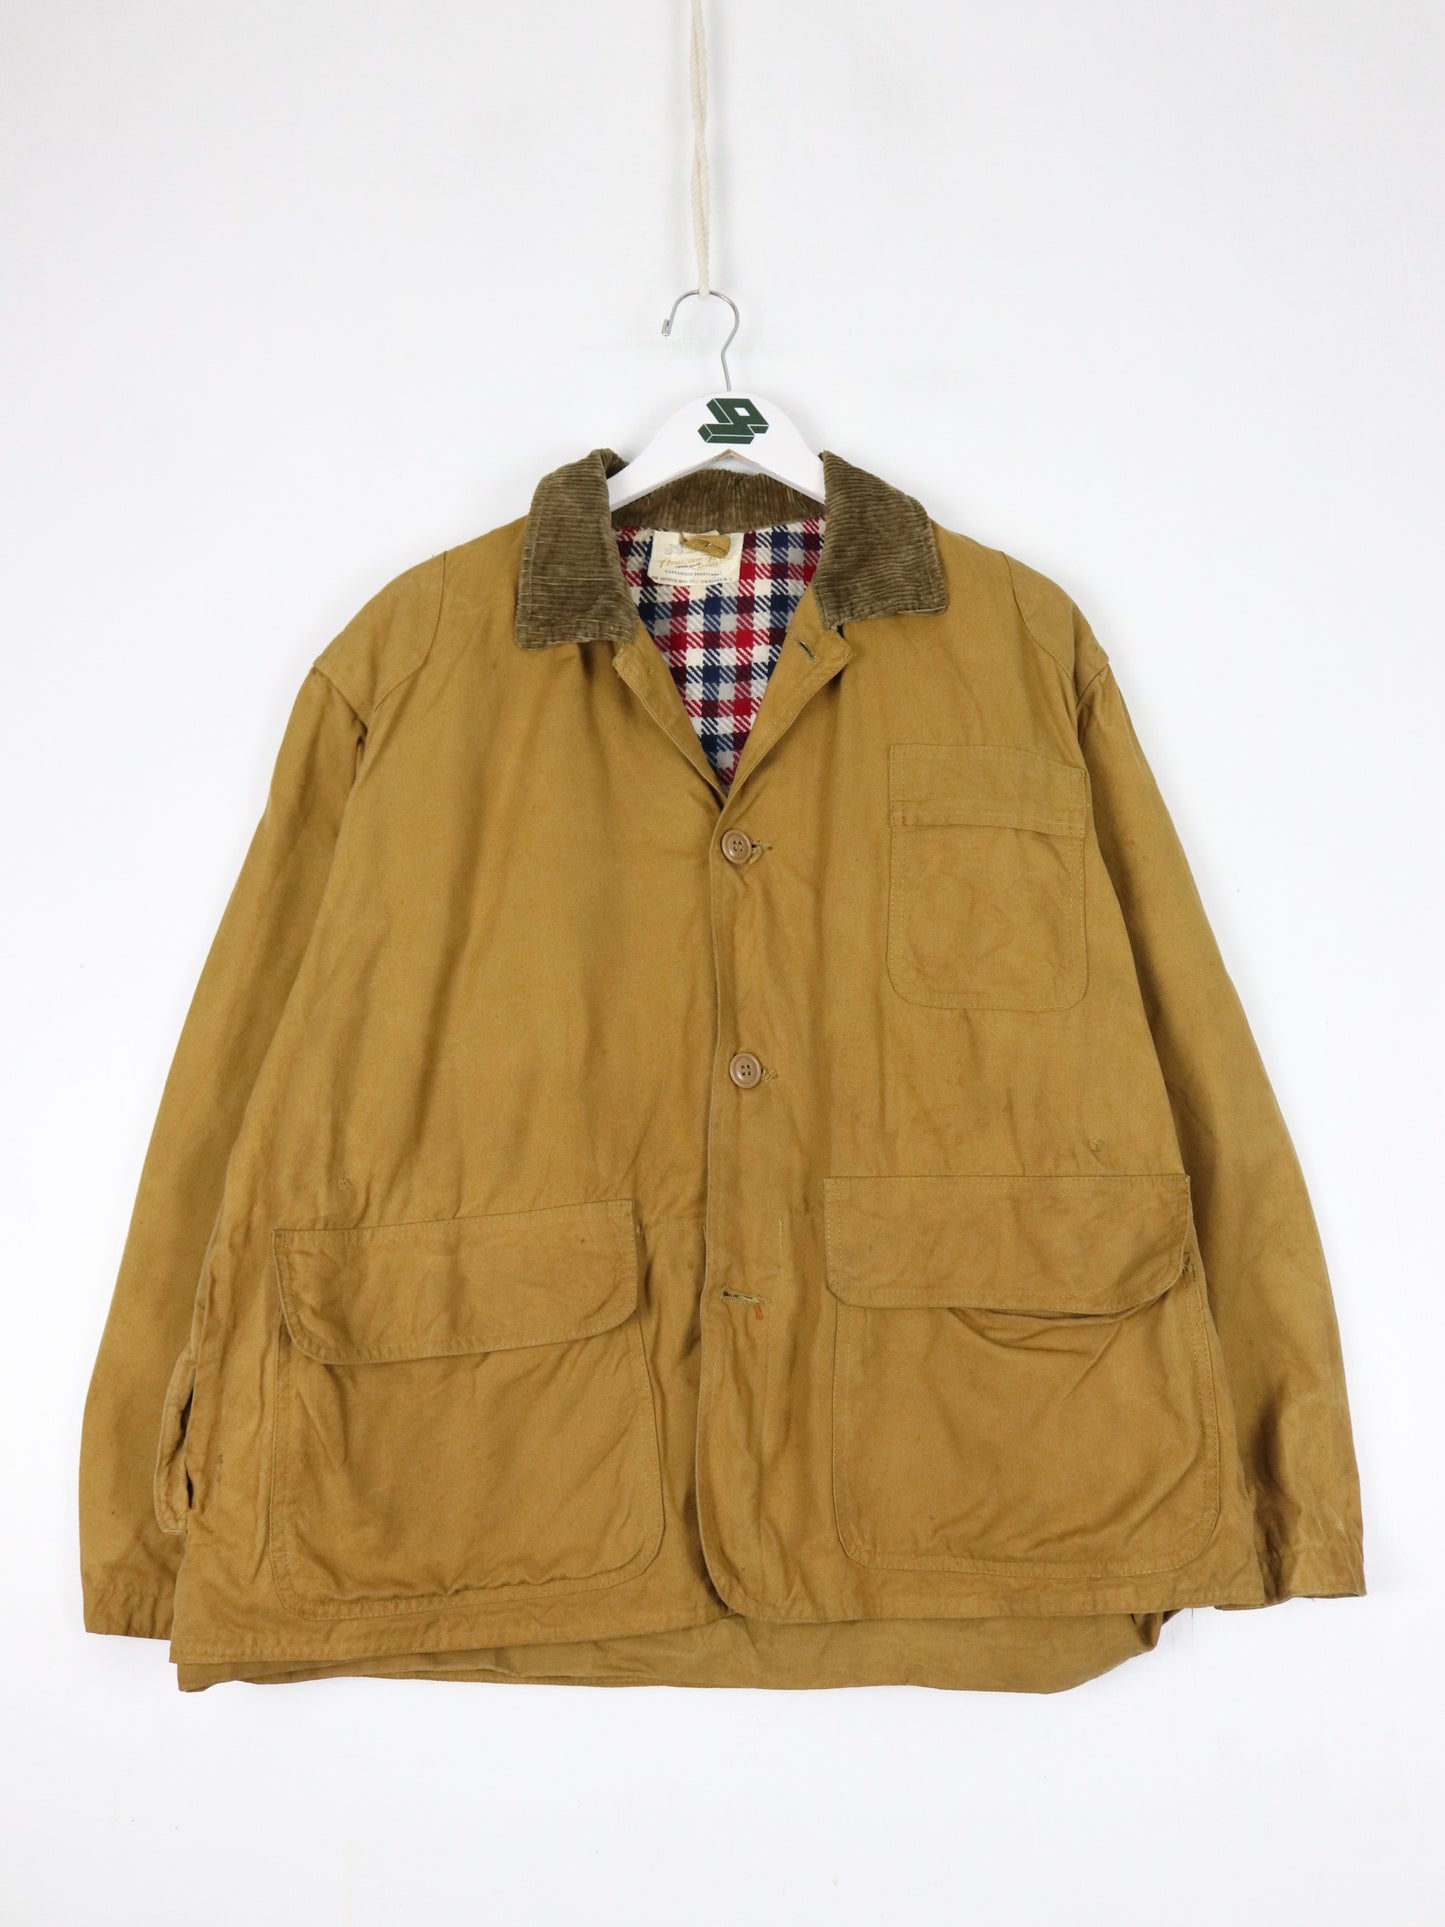 Vintage American Field Sportswear Jacket Mens Large Brown 60s Hunting Outdoors